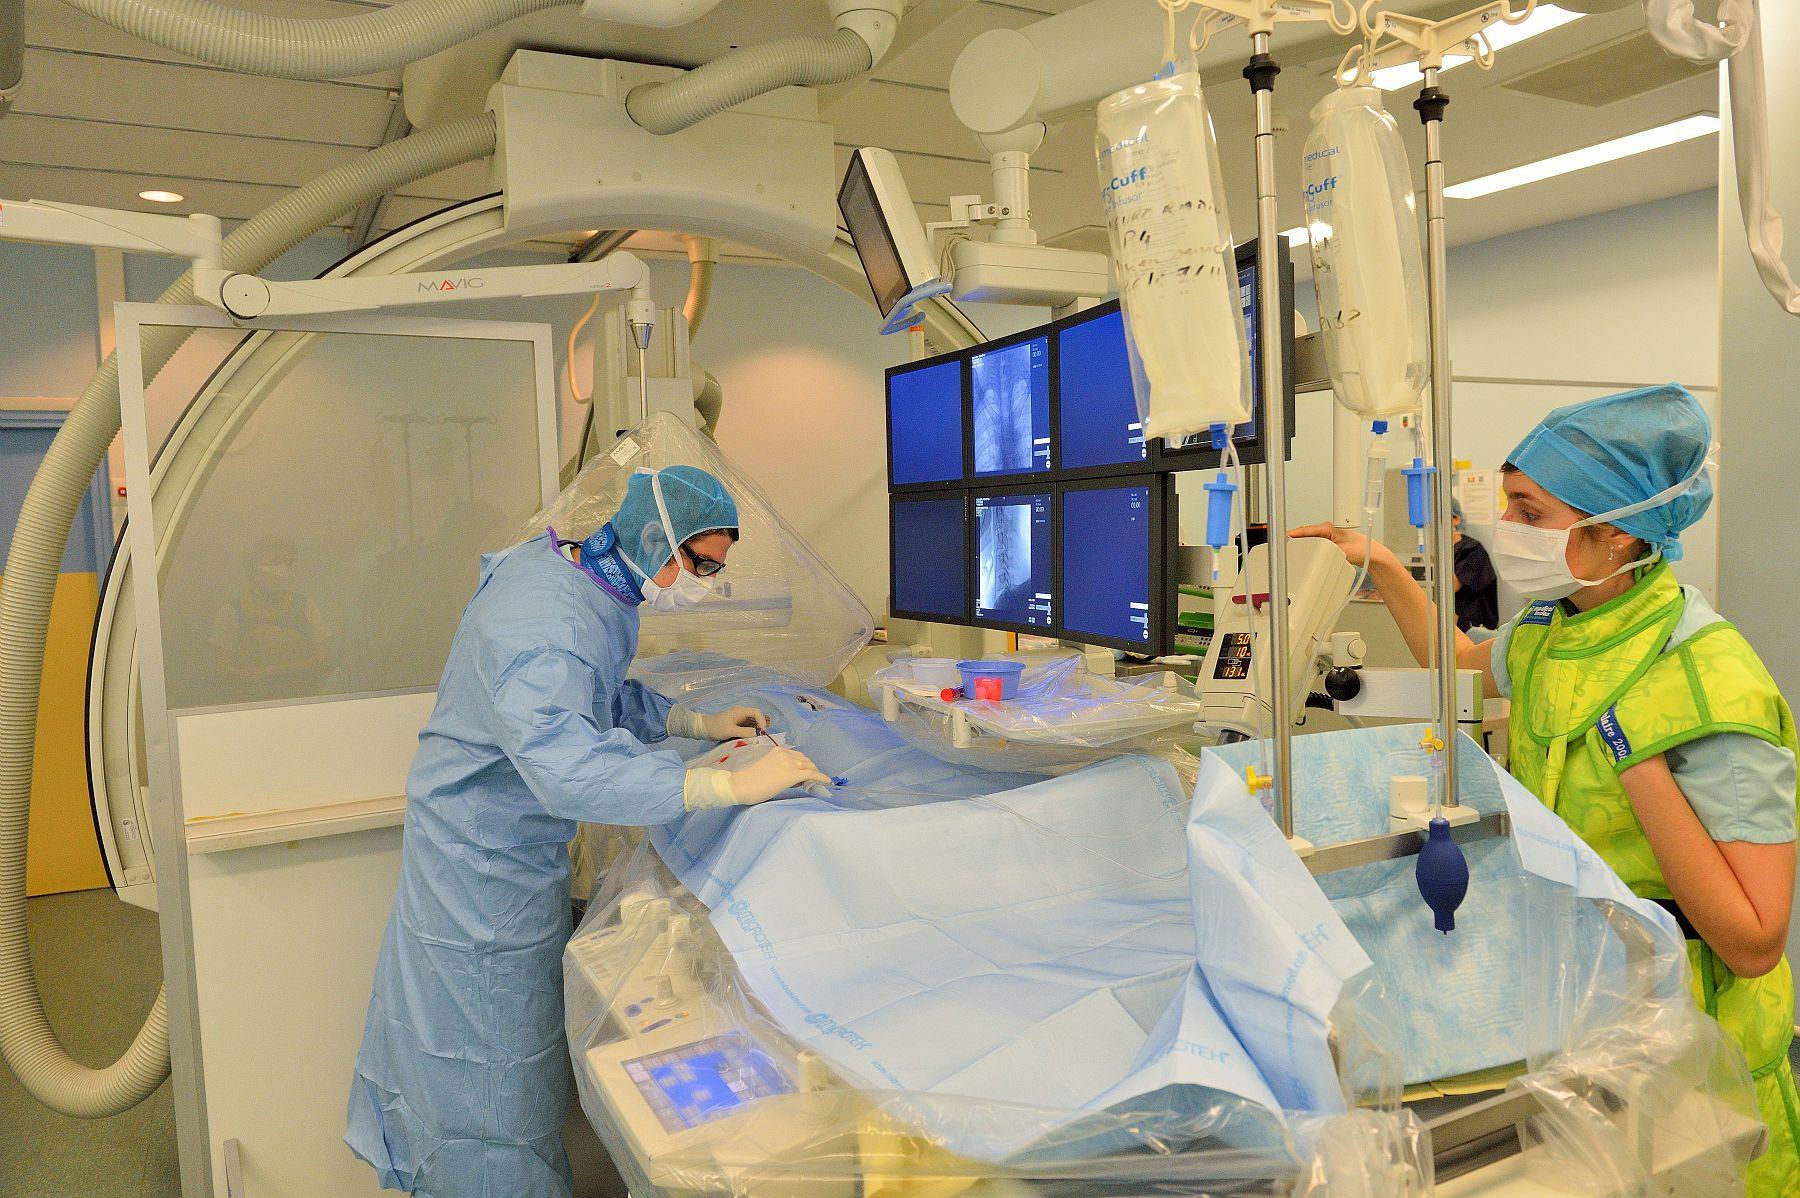 Frédéric Clarençon, neuroradiologue interventionnel à l’hôpital de la Pitié-Salpêtrière (Paris), en salle de neuroradiologie interventionnelle réalise une angiographie. Il est exposé aux rayonnements ionisants durant l’intervention. 